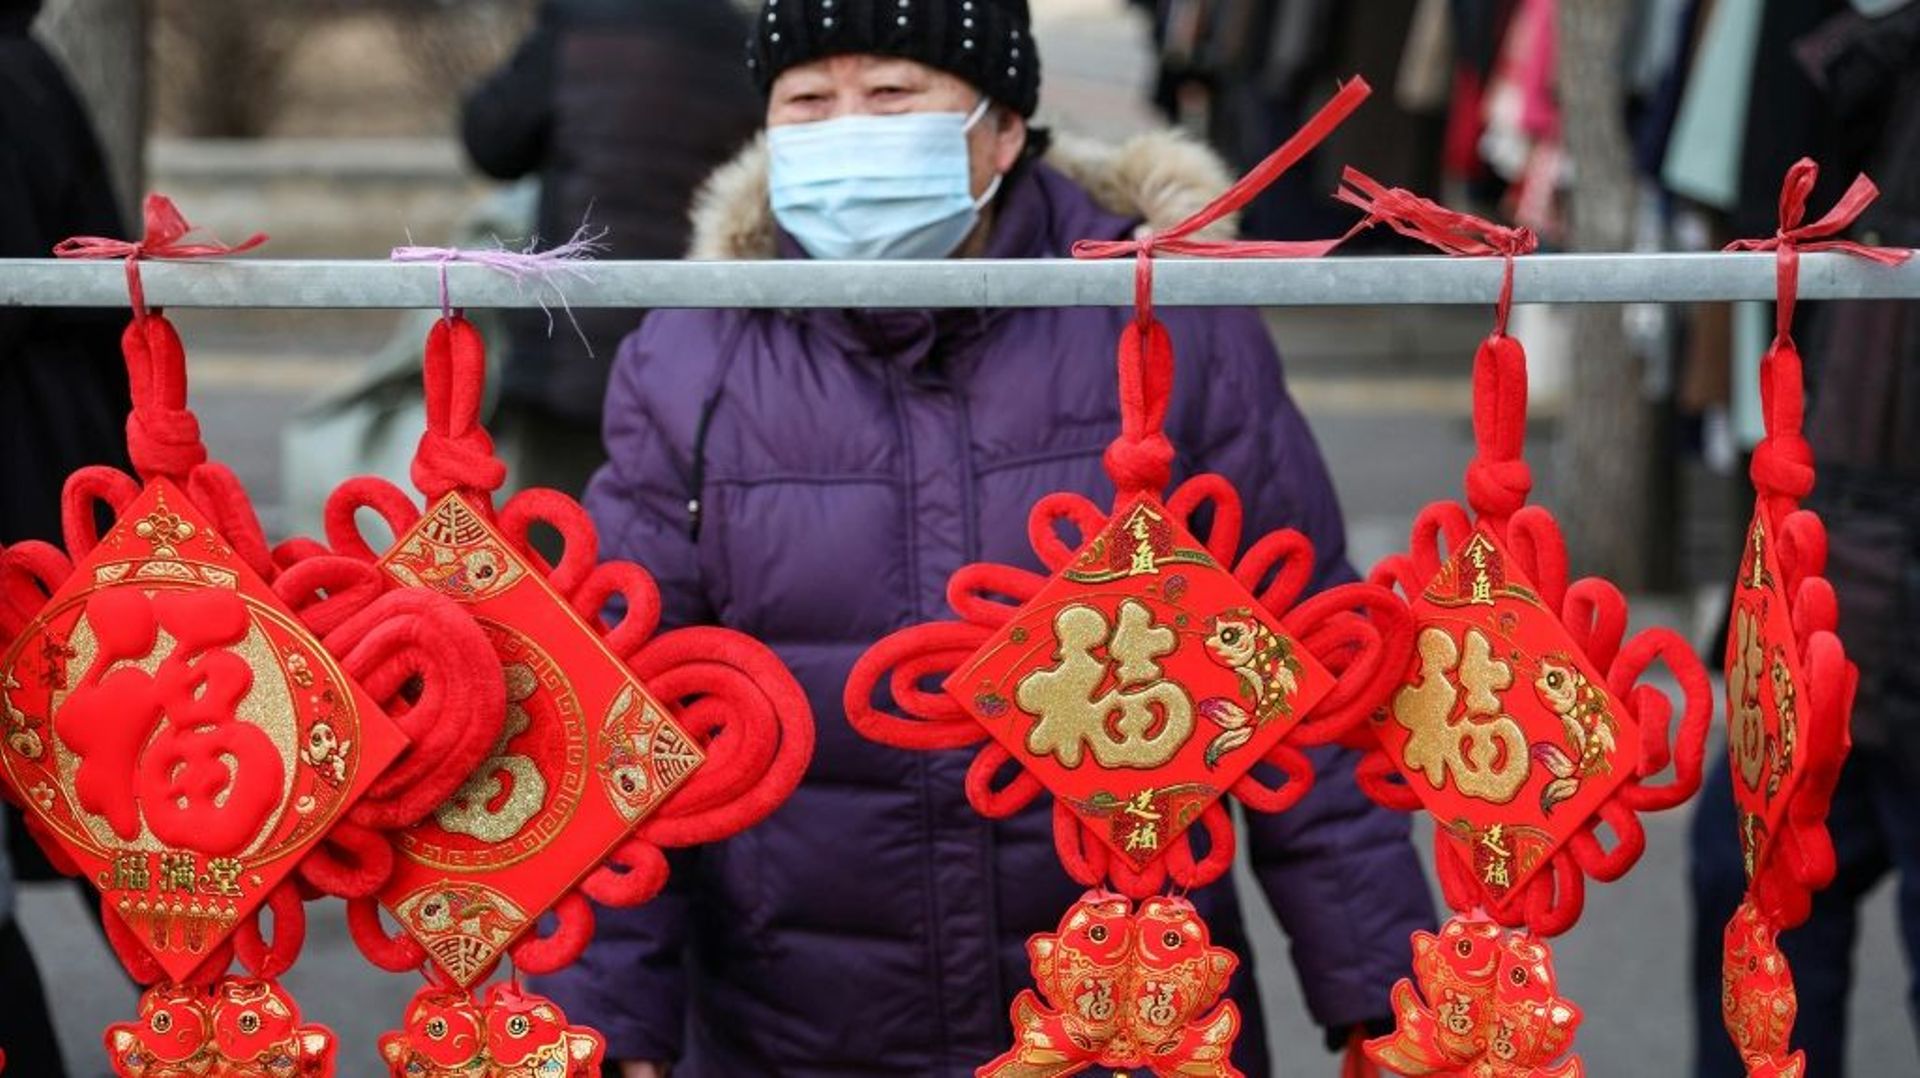 Sur un marché à Shenyang, dans la province chinoise du Lianoning, le 12 janvier 2022